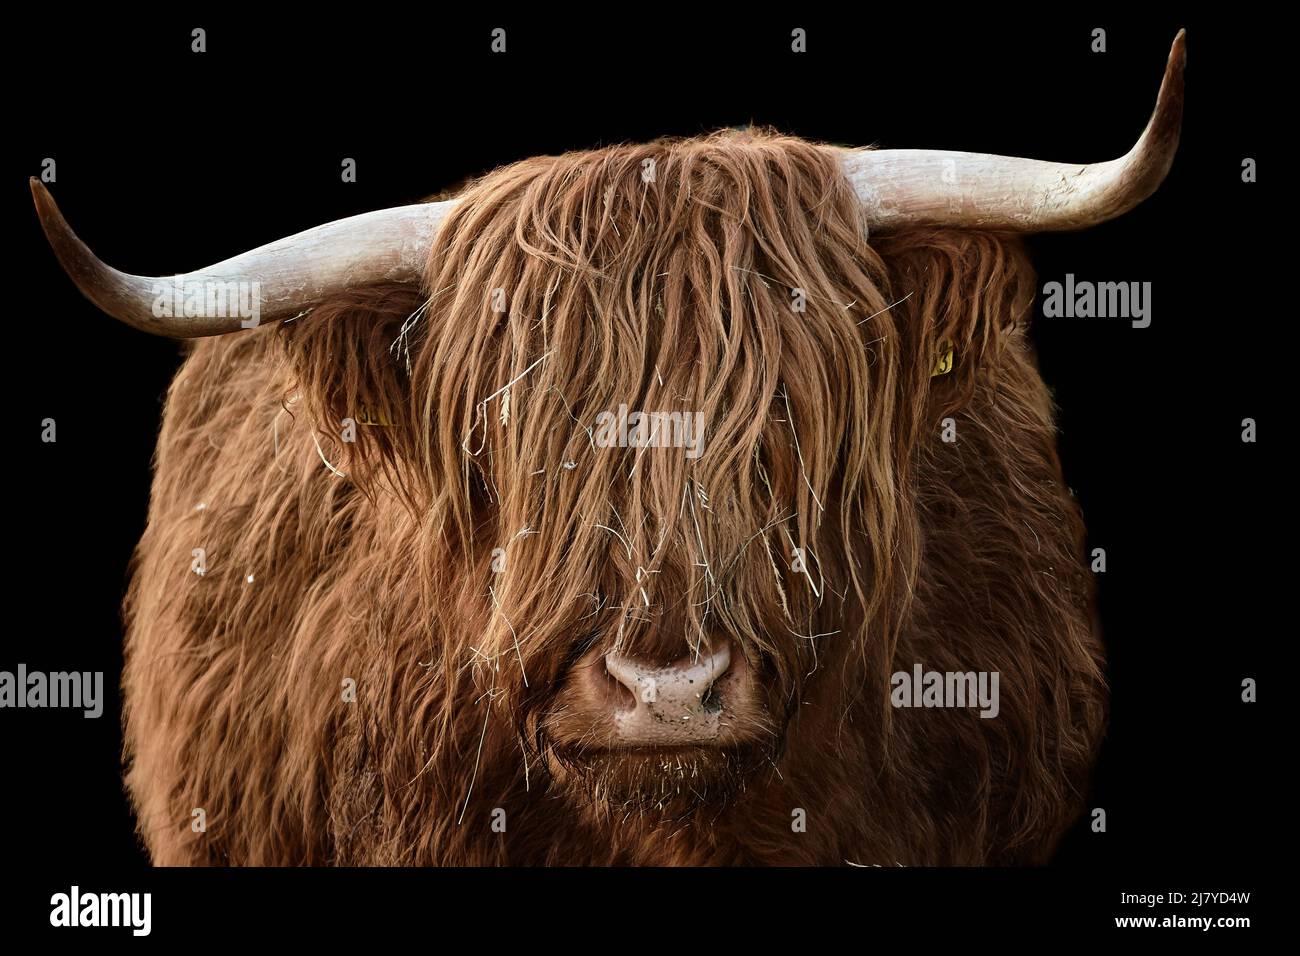 Horned Highland cattle isolated on black background Stock Photo